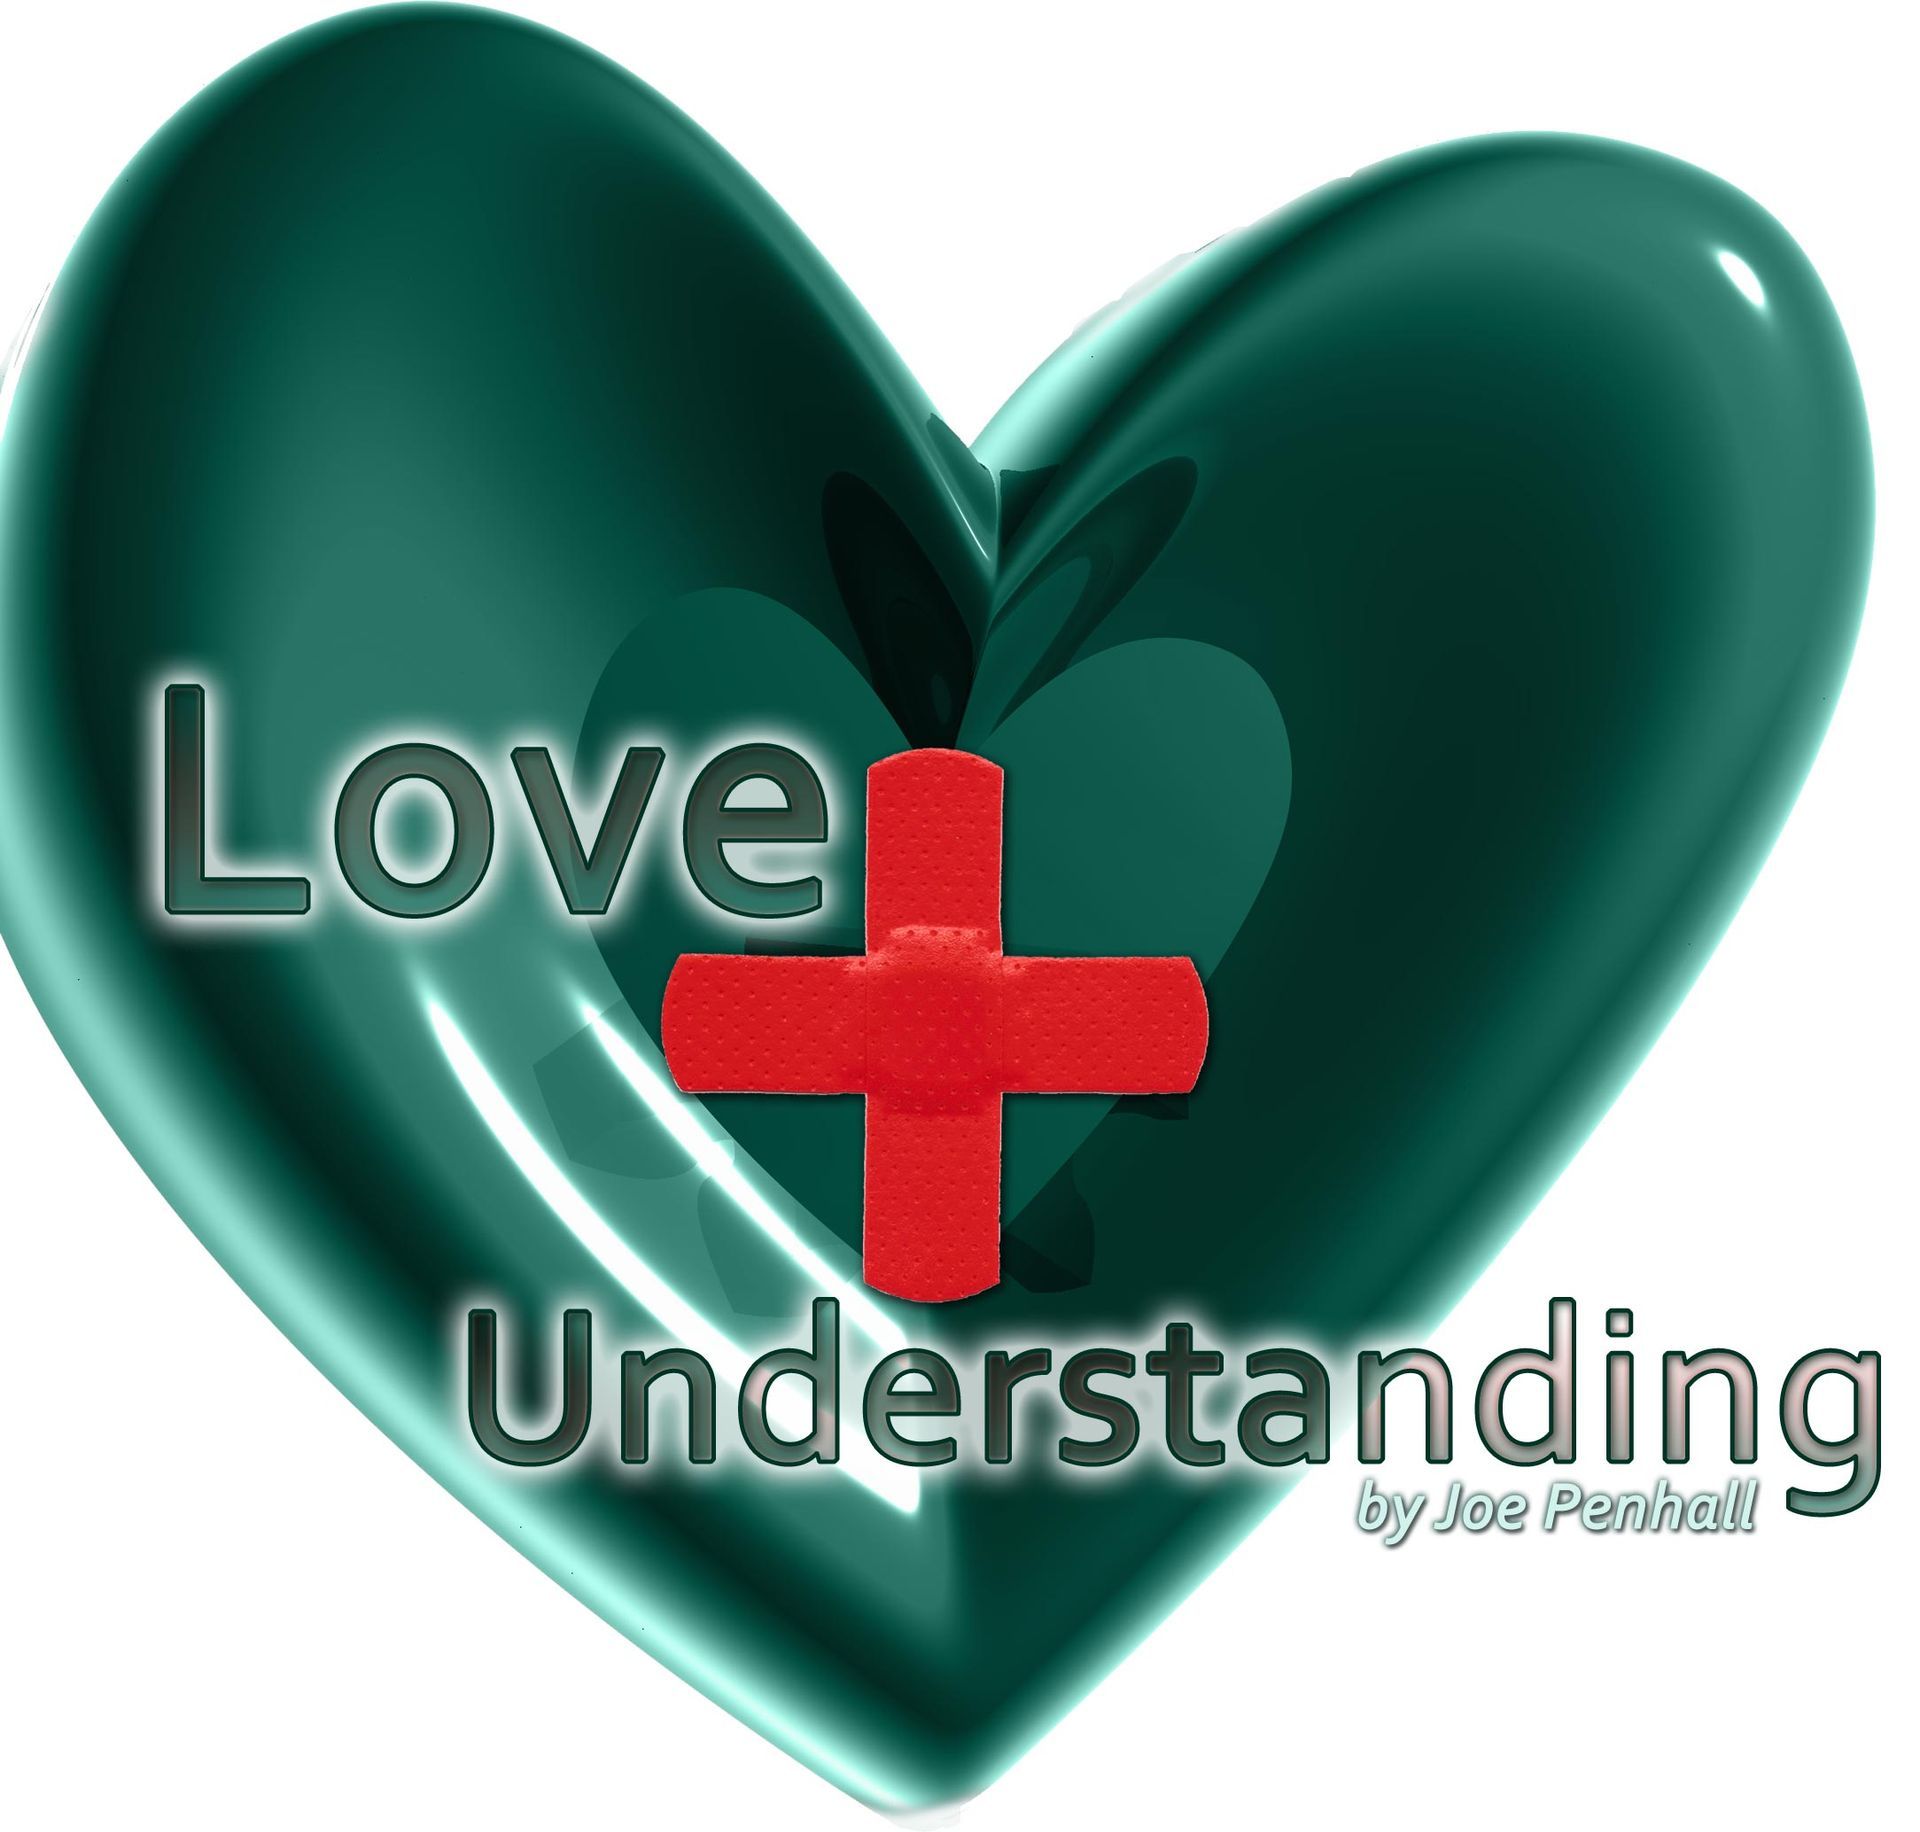 Love & Understanding